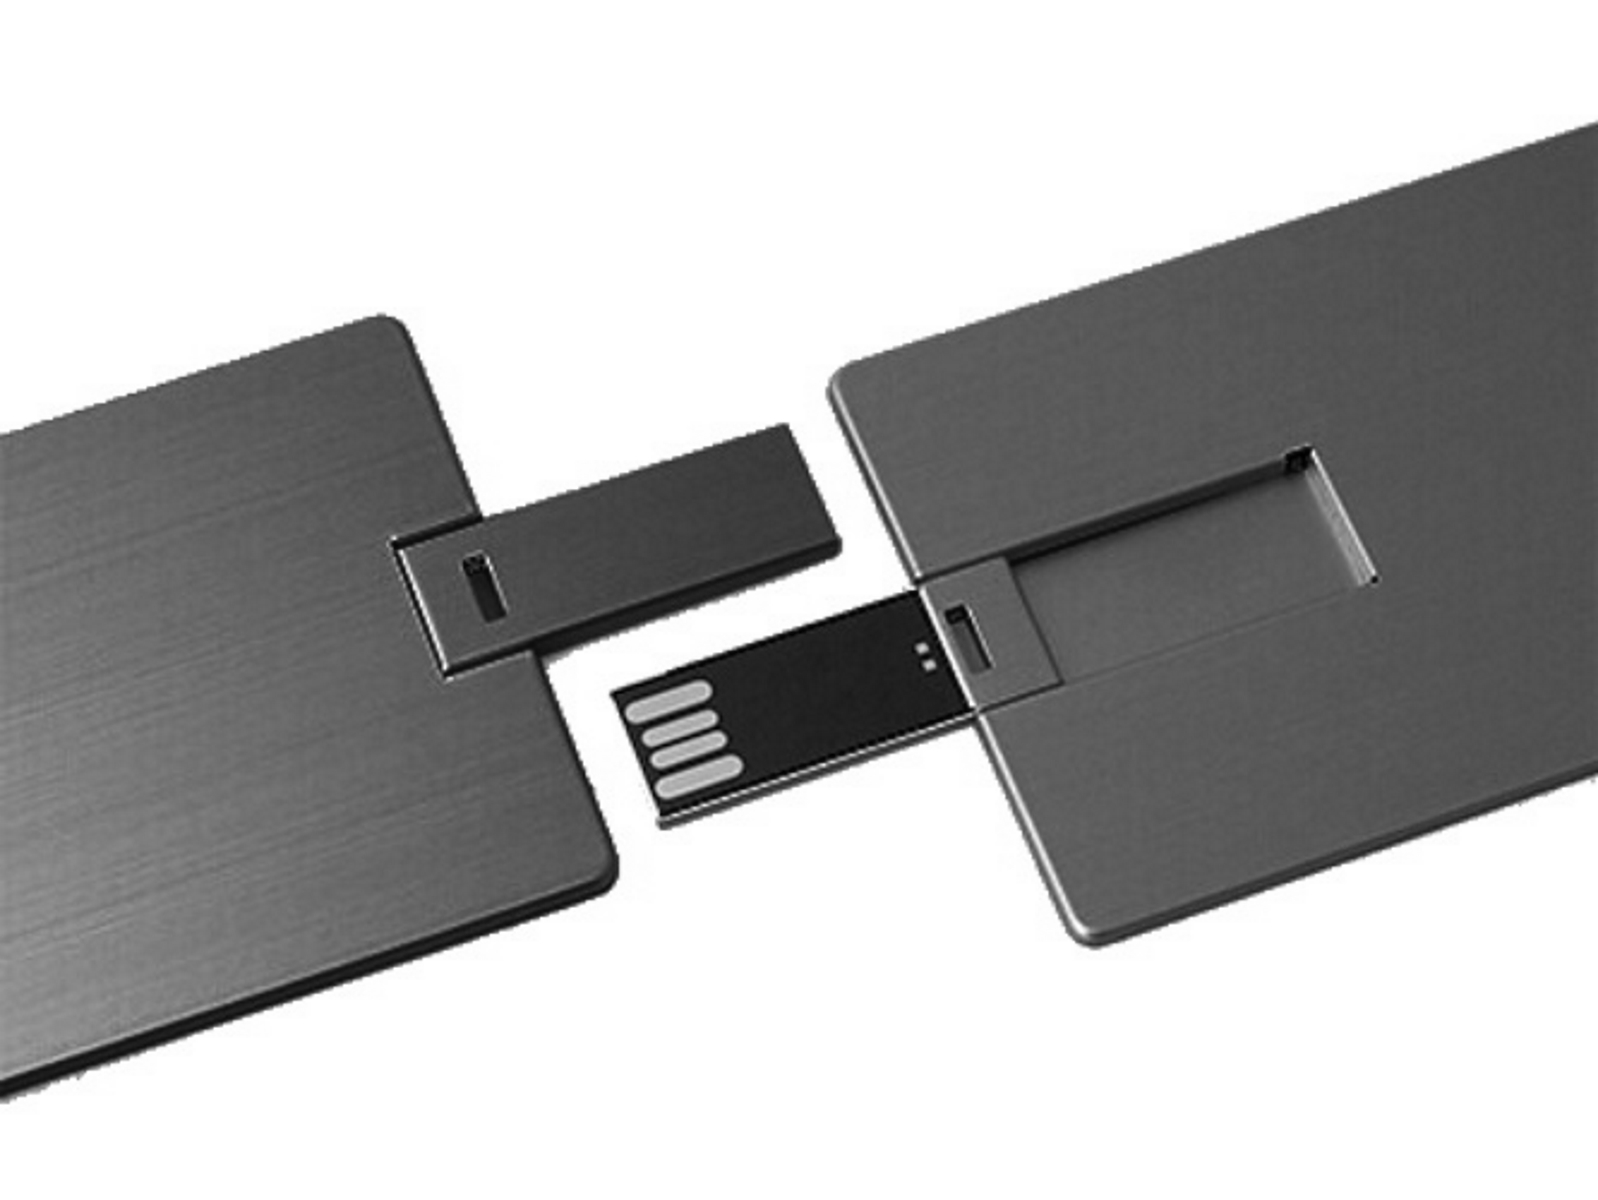 USB GERMANY (Schwarz, Metall-Kreditkarte USB-Stick GB) ® 64